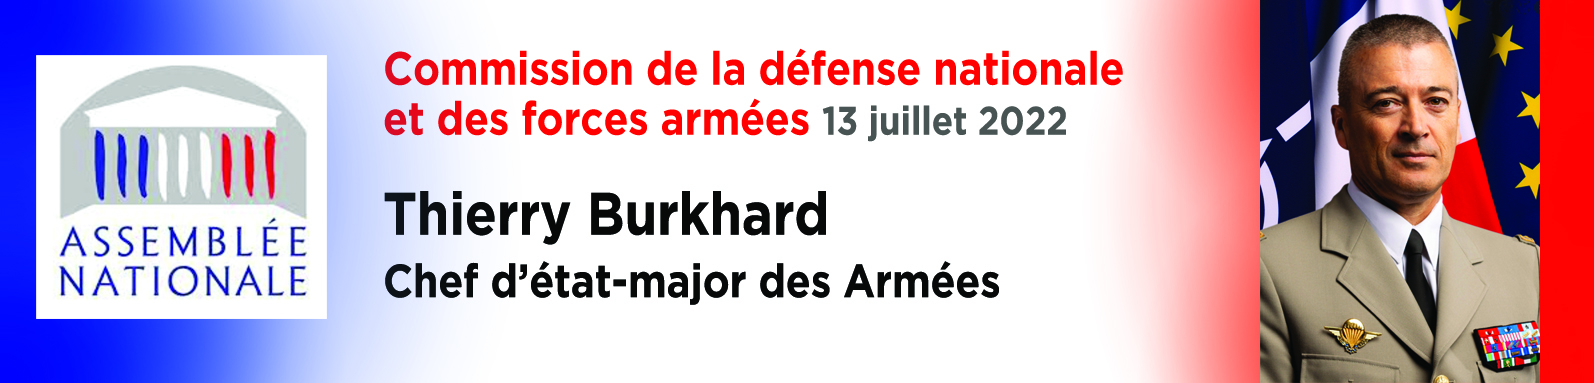 bandeau-intervention-general-BURKHARD-juillet-2022-assemblee-nationale